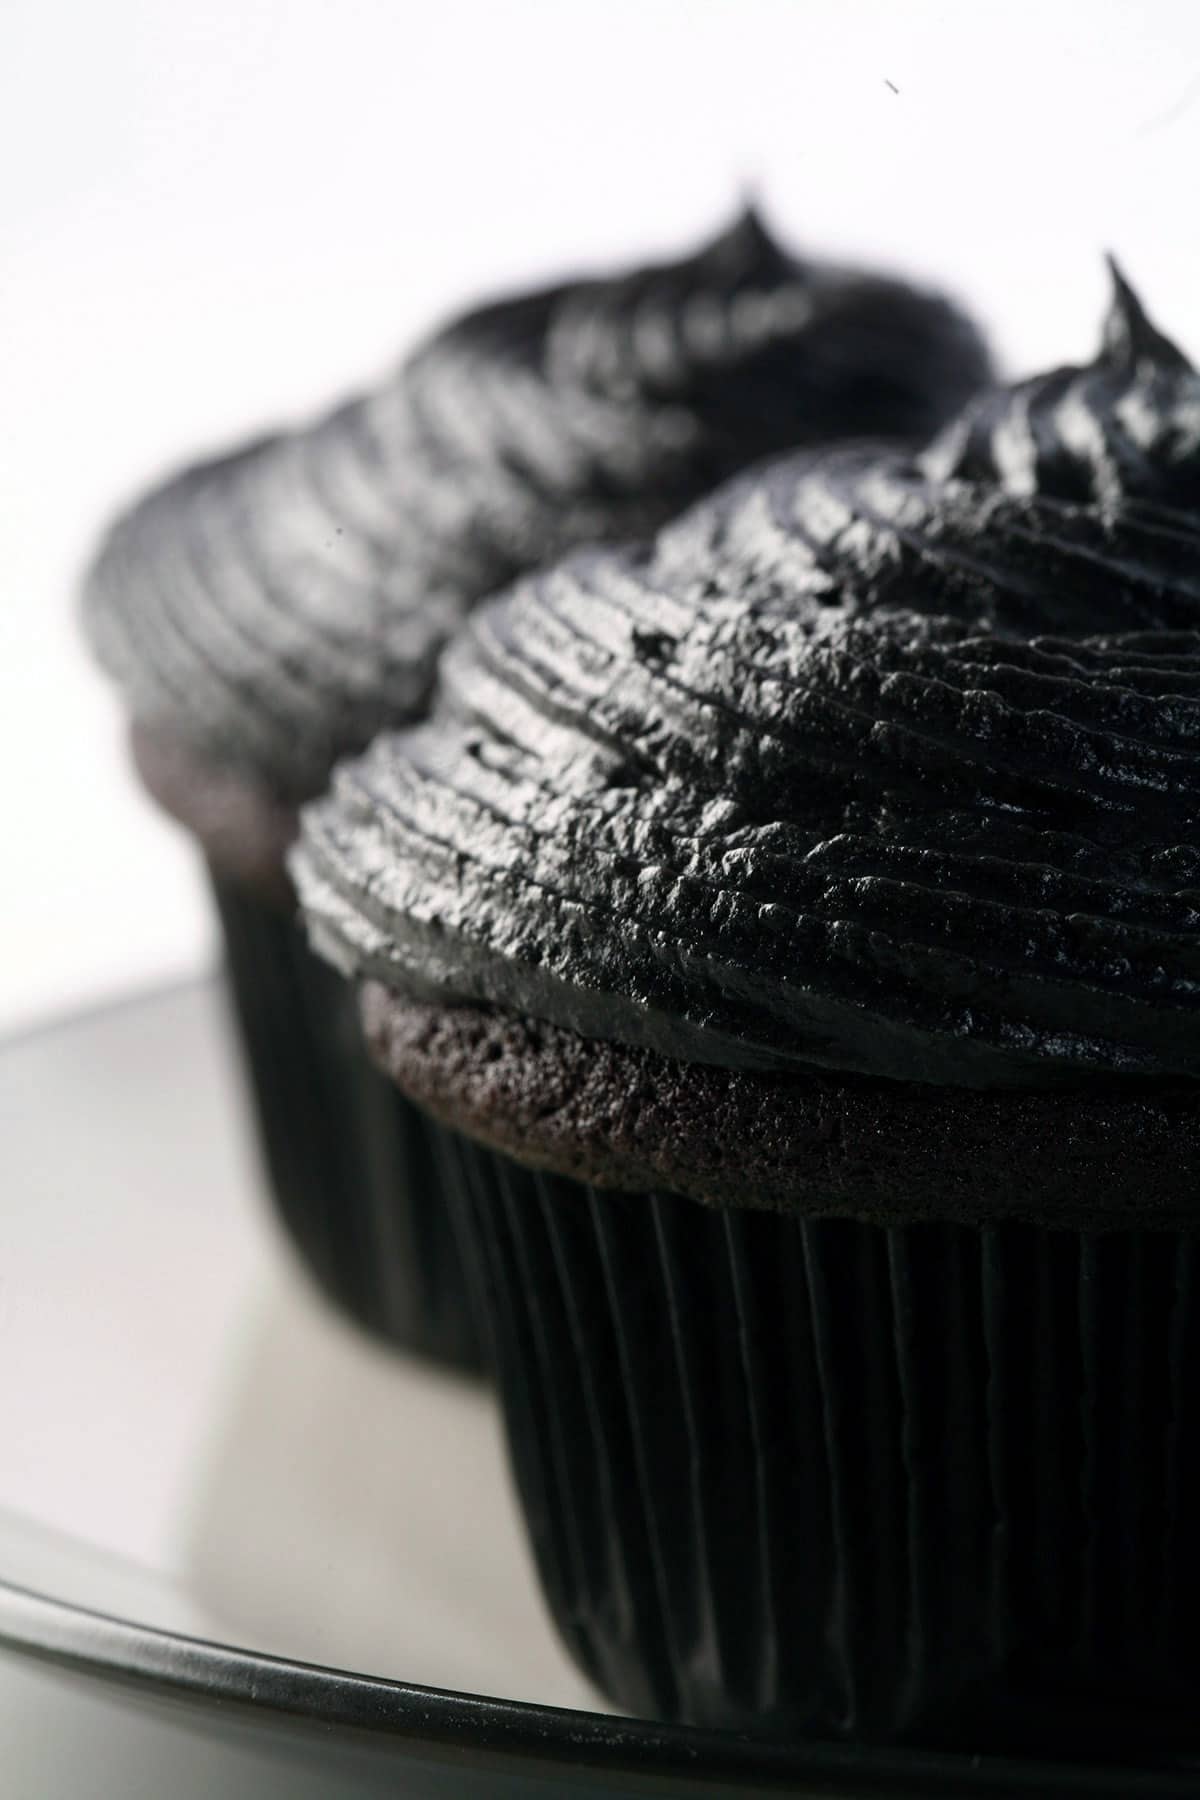 2 black velvet cupcakes on a white plate.